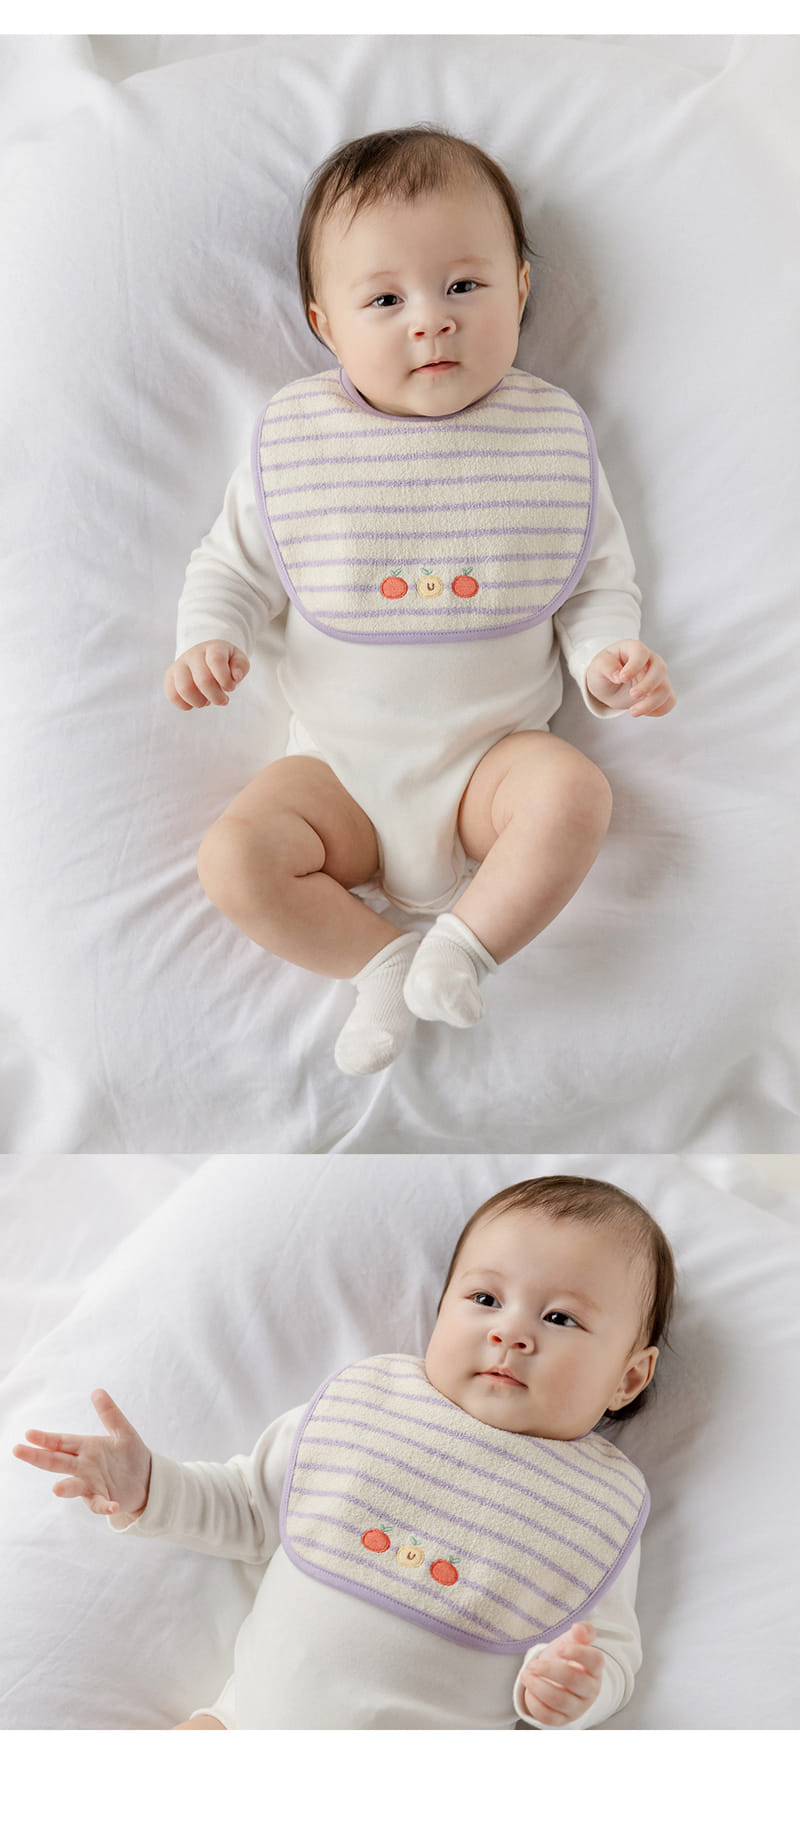 Kids Clara - Korean Baby Fashion - #onlinebabyboutique - Purto Baby Bib - 7